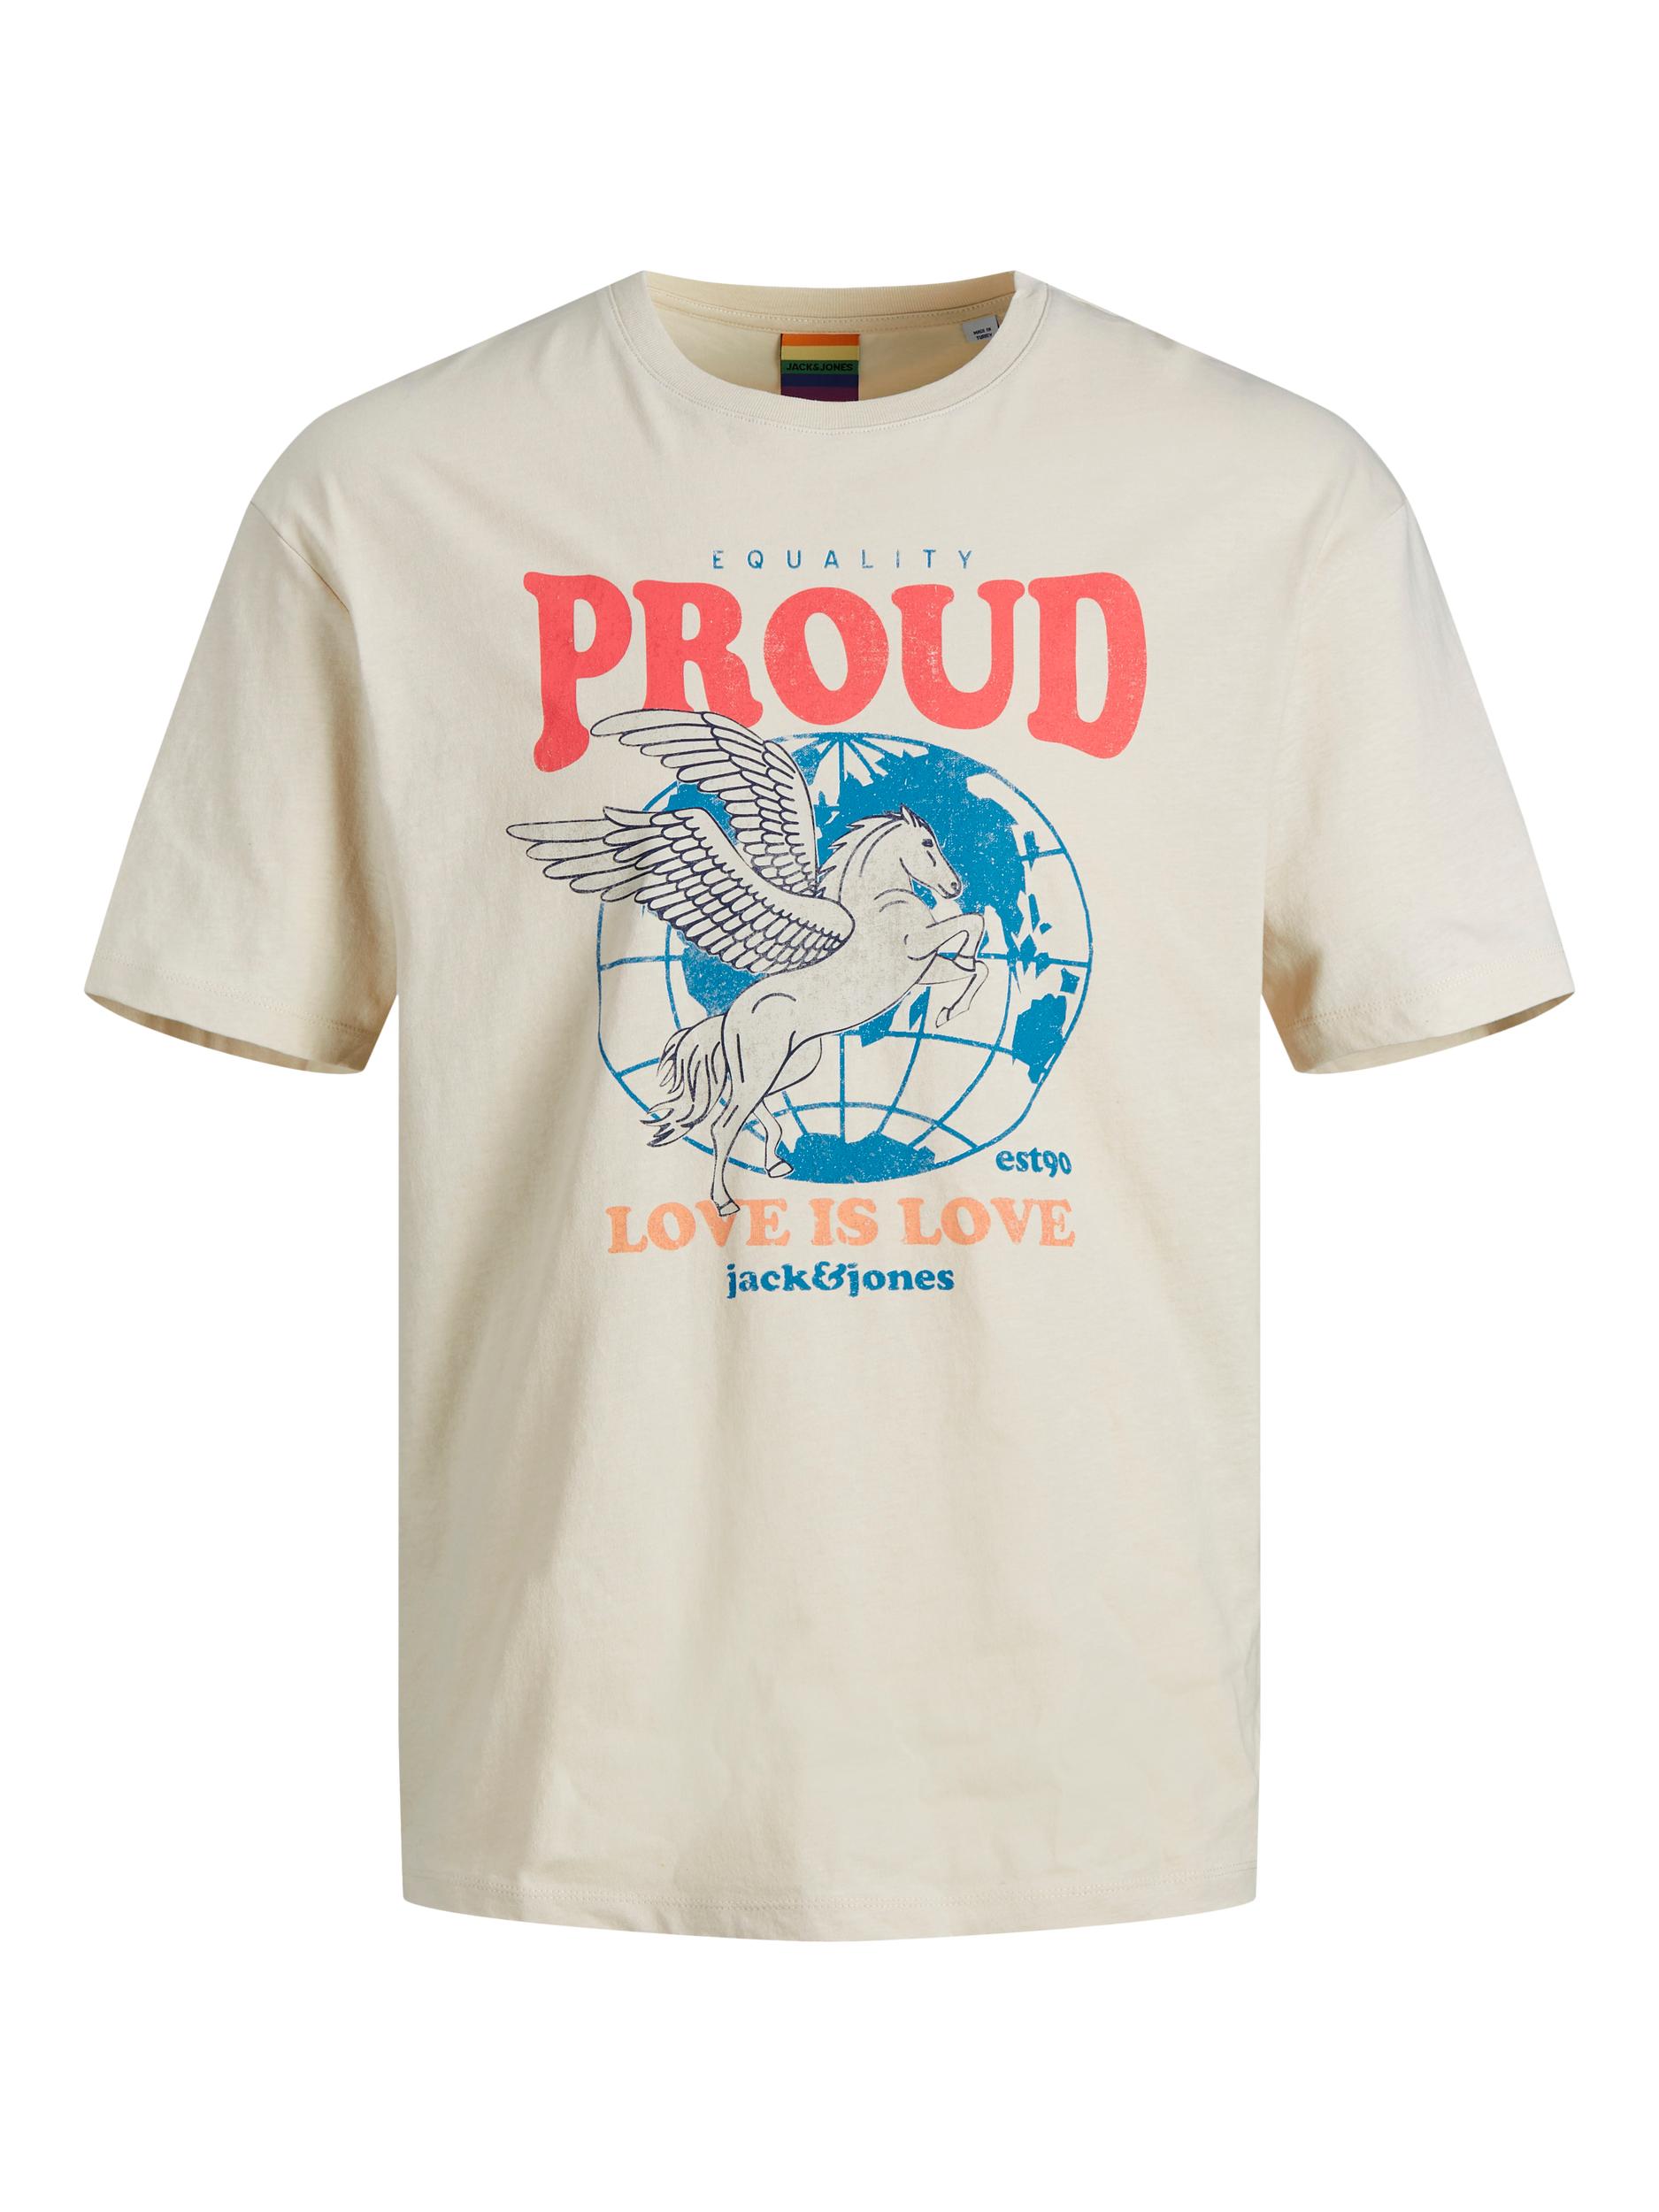 G25l6 Odzież JACK & JONES Koszulka Proud w kolorze Beżowym 